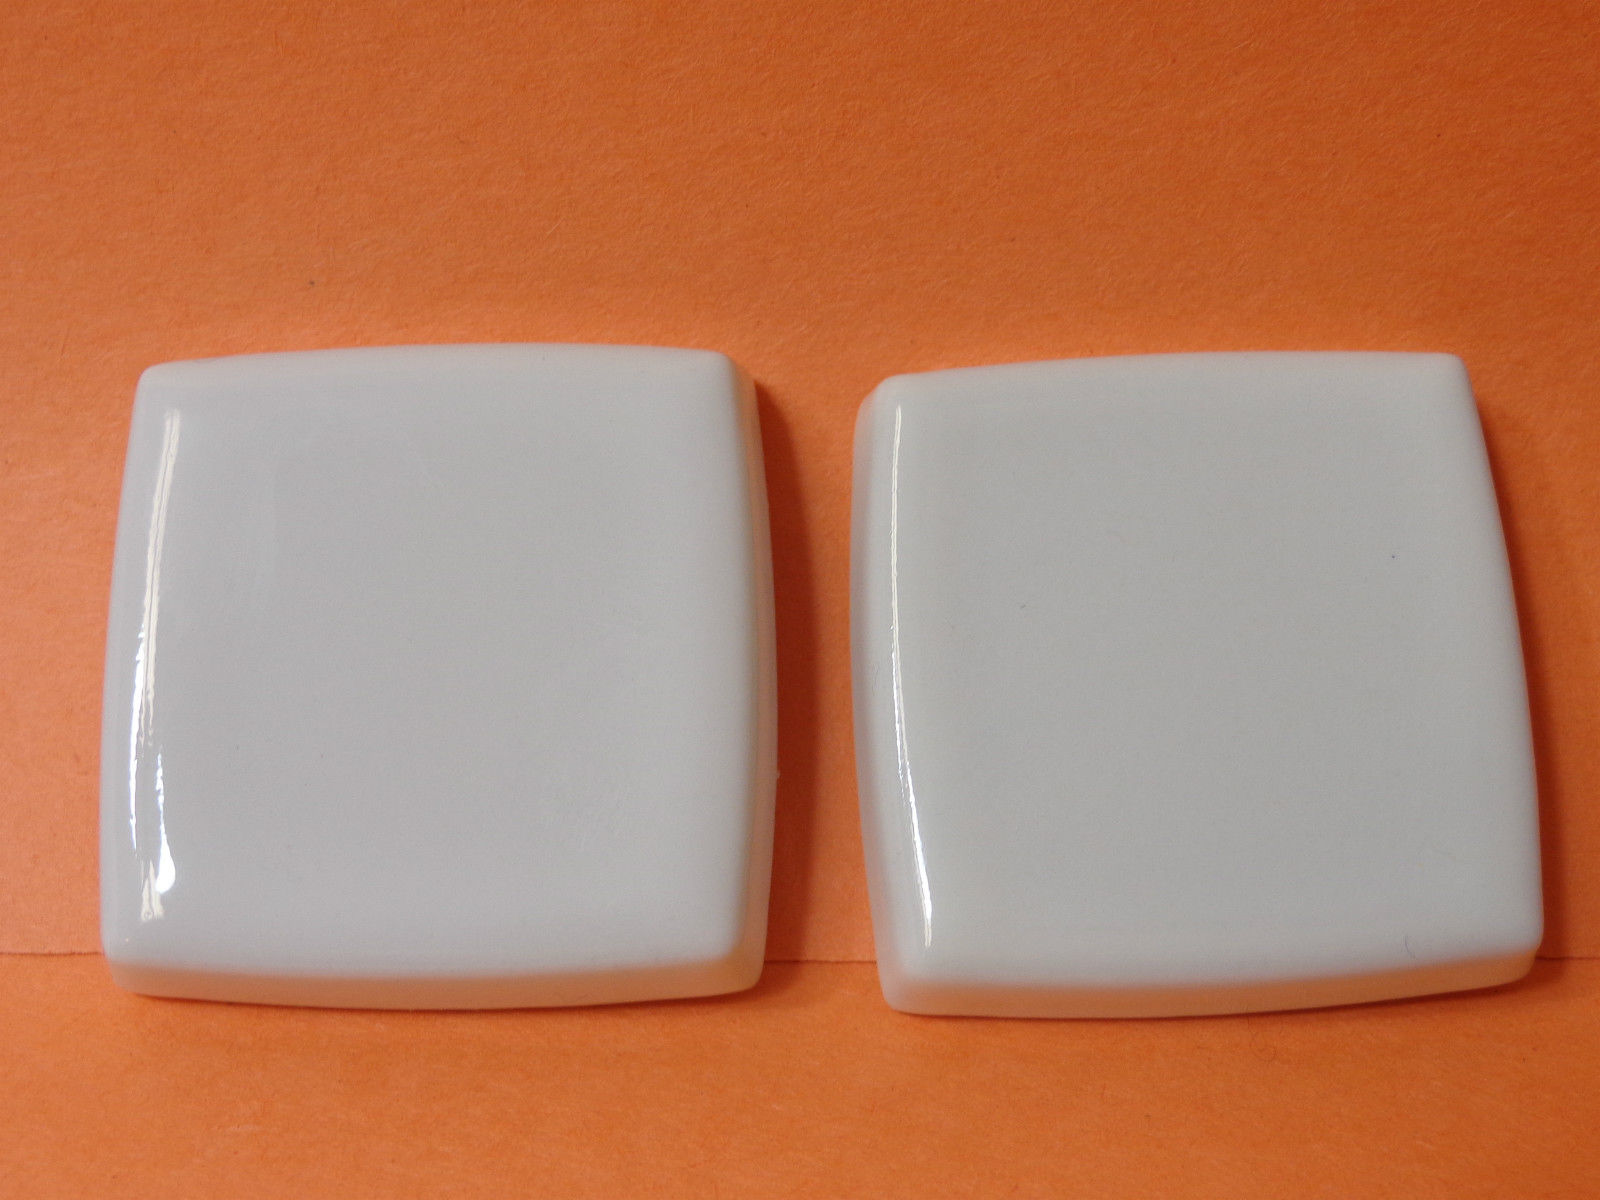 Kohler | 9926-56 | KL9926-56 (22493-56) Kohler Alterna Large 2-1/2" Square Ceramic Inserts - TENDER GREY